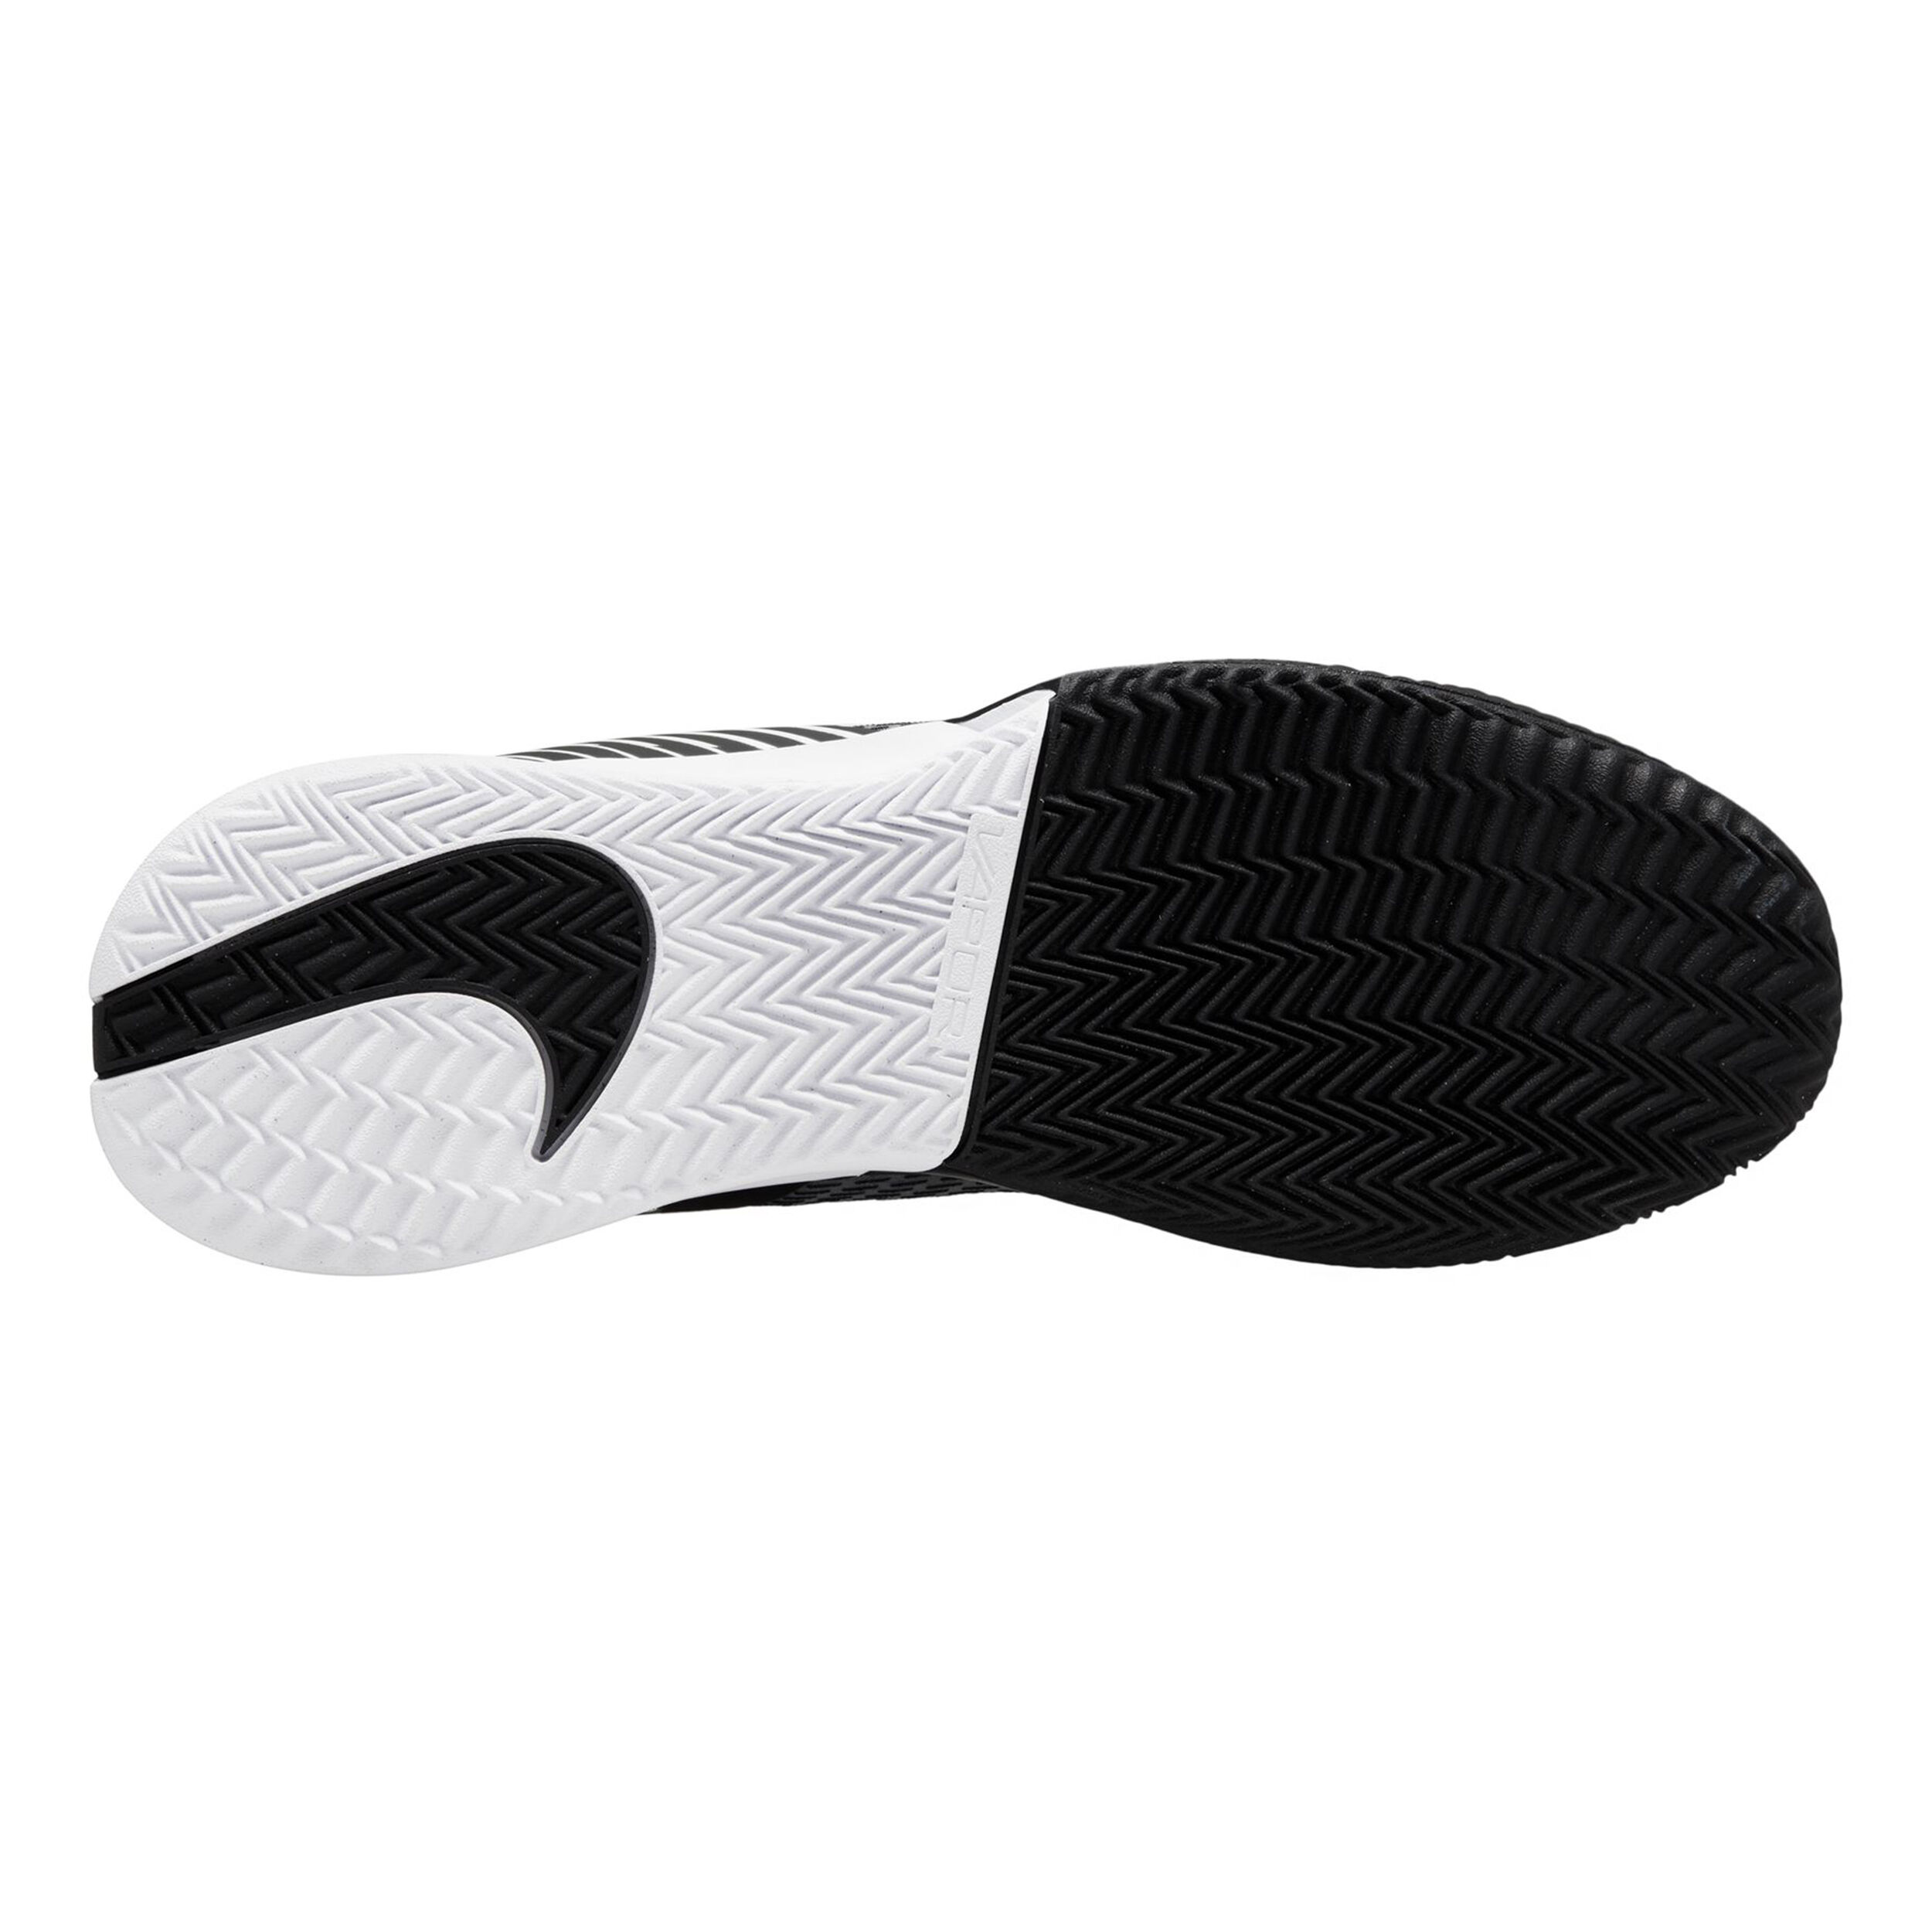 Air Zoom Vapor Pro 2 Clay Court Shoe Men - Black, White